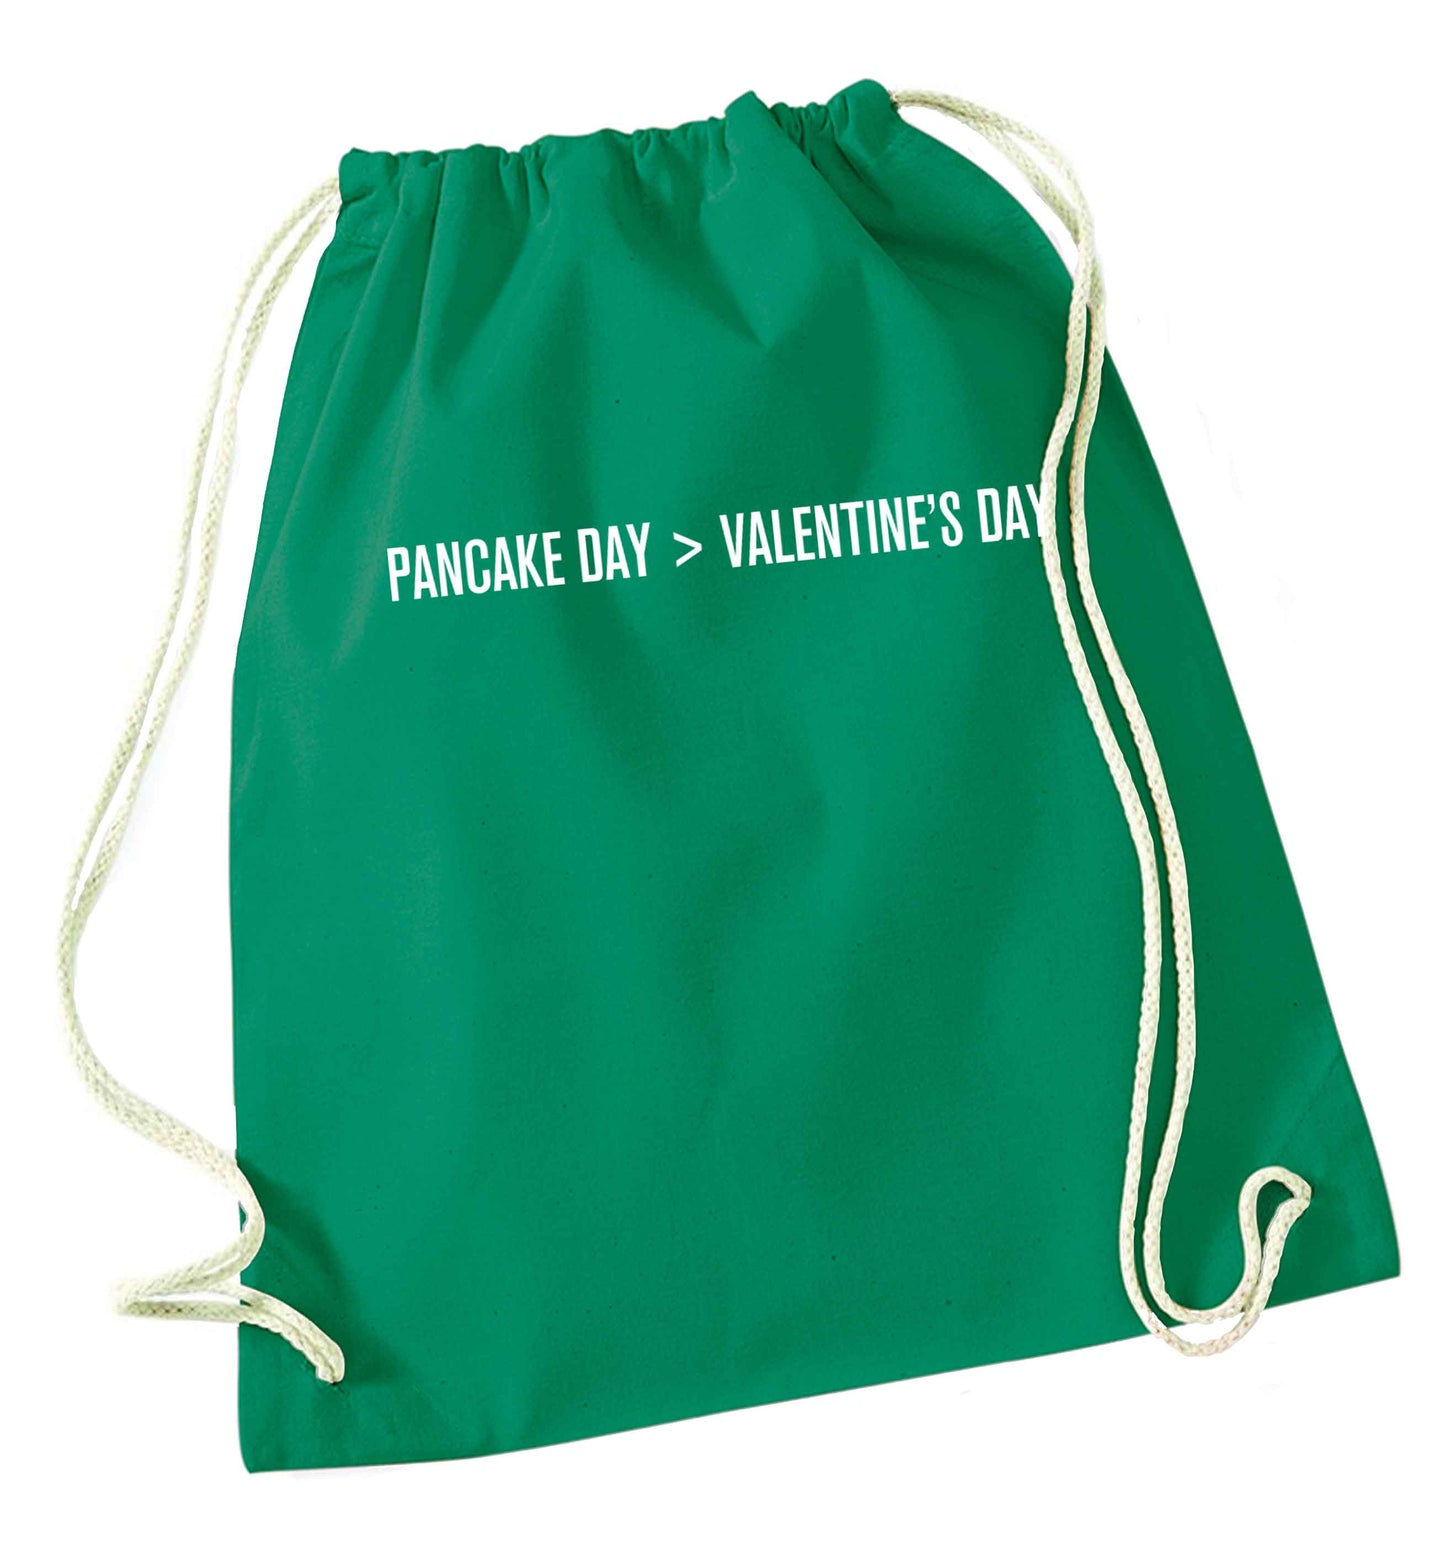 Pancake day > valentines day green drawstring bag